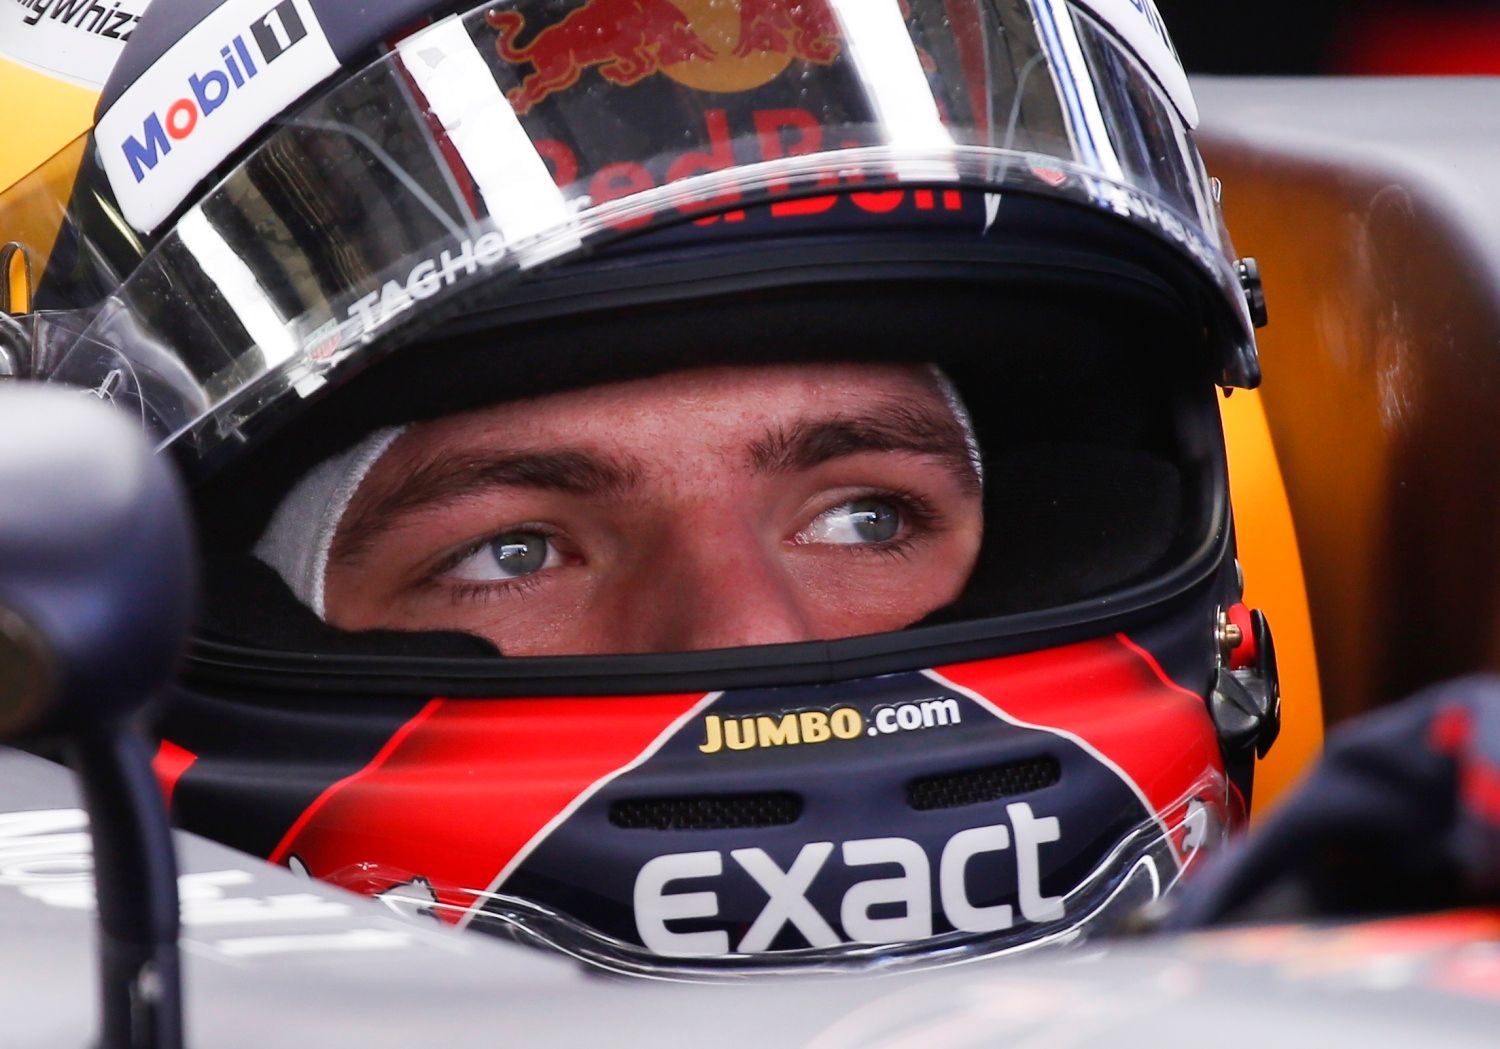 Zabíjejí sport, obvinil Verstappen komisaře formule 1. Fanoušky vyzval, ať na závody nechodí